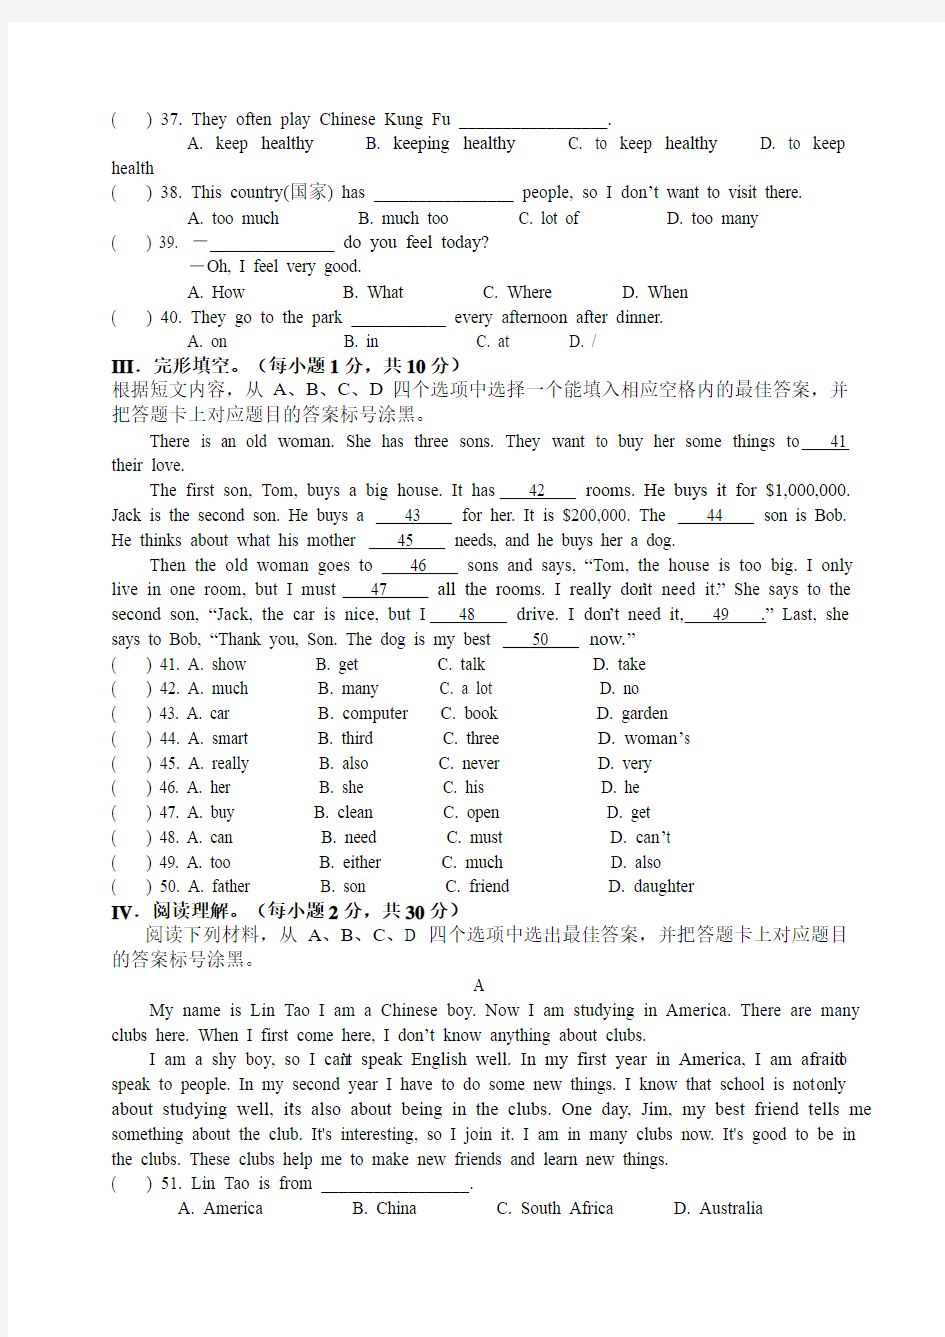 重庆一中初2016级13-14学年(下)半期试题——英语